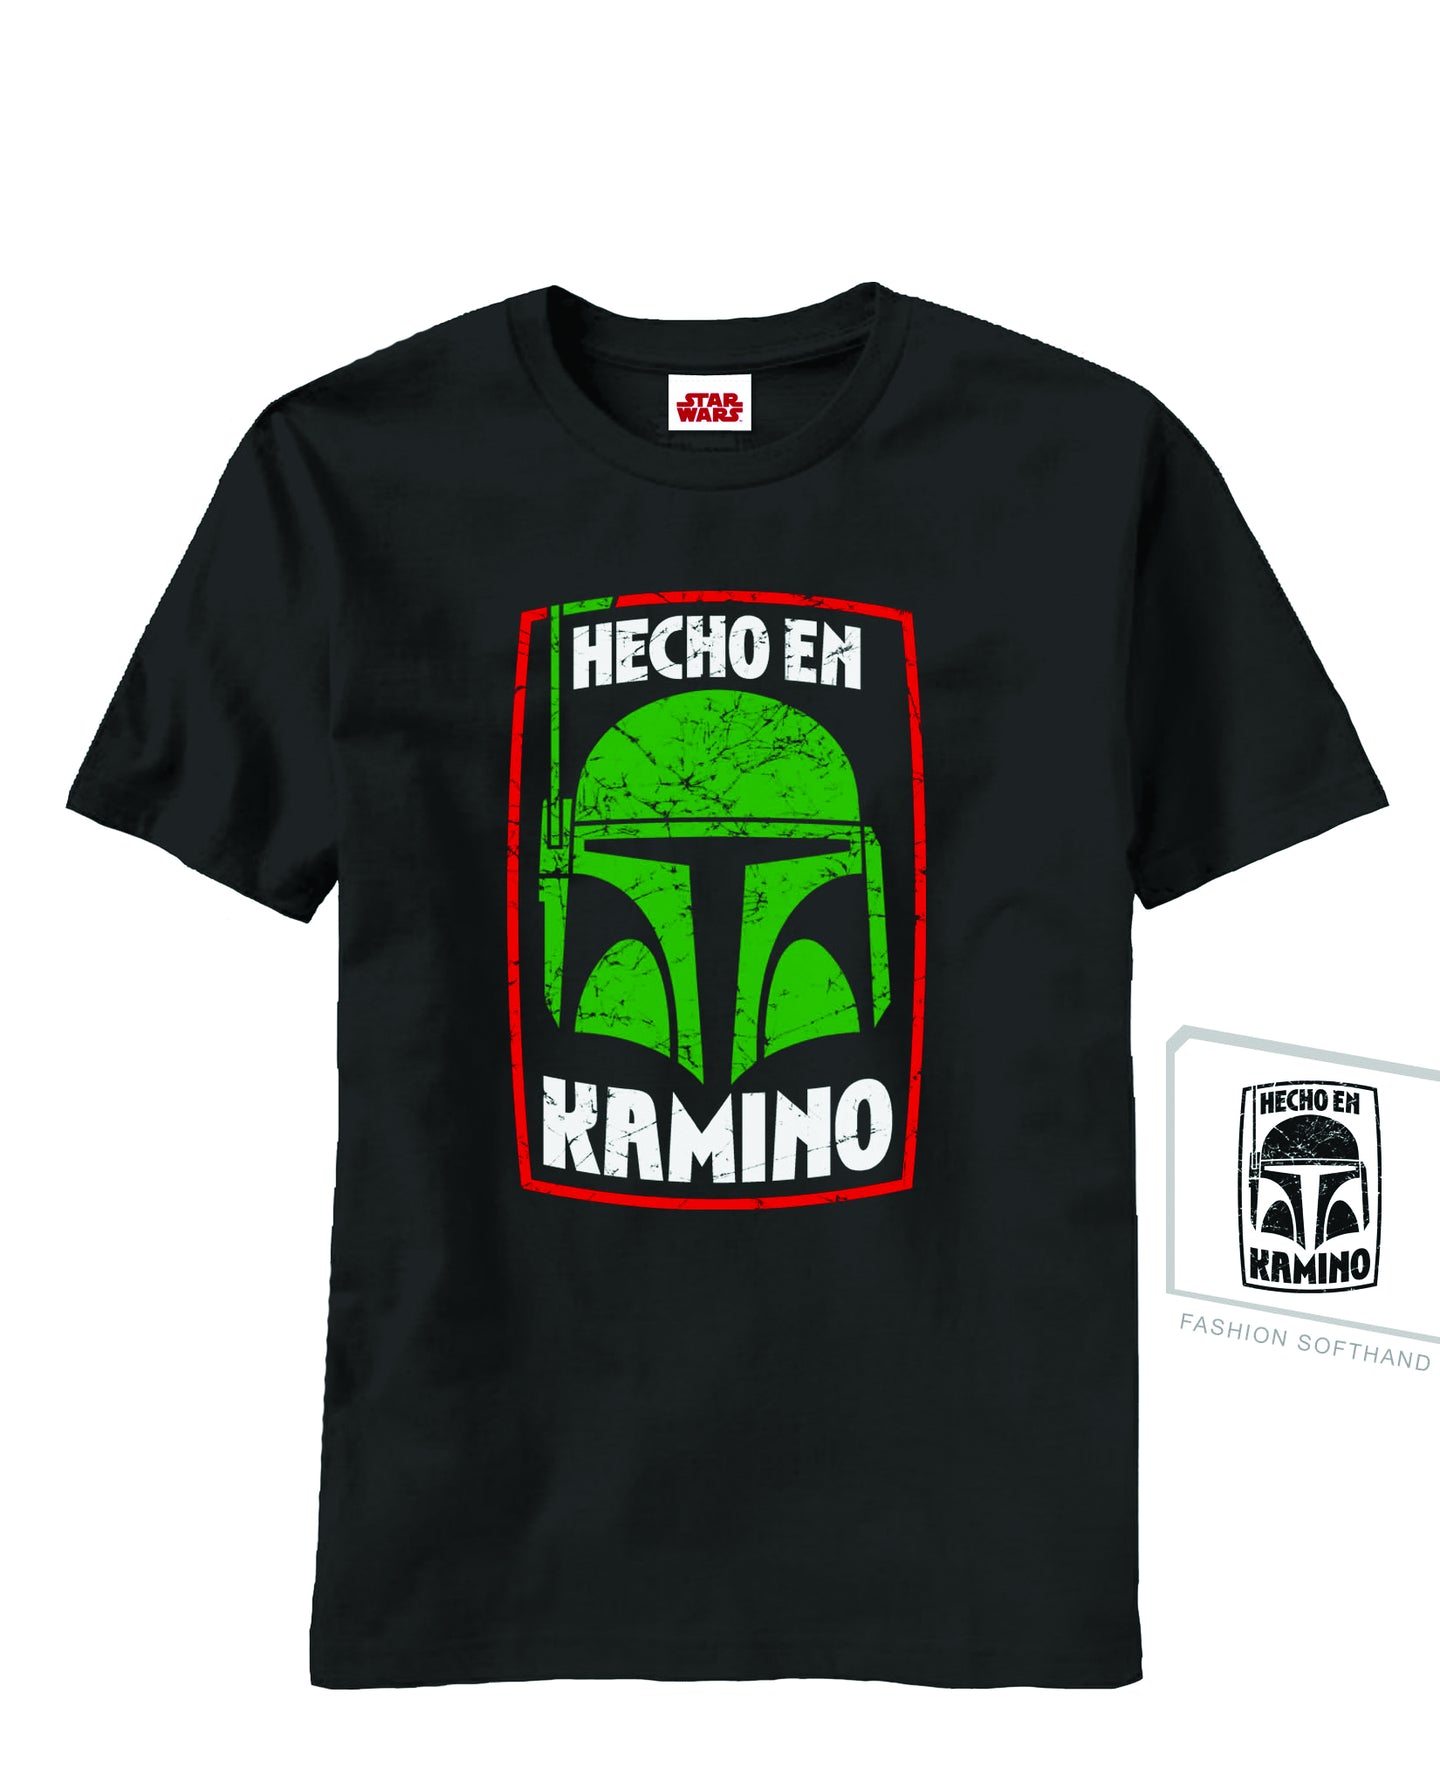 Star Wars Hecho En Kamino Black PX T-Shirt Adult Medium